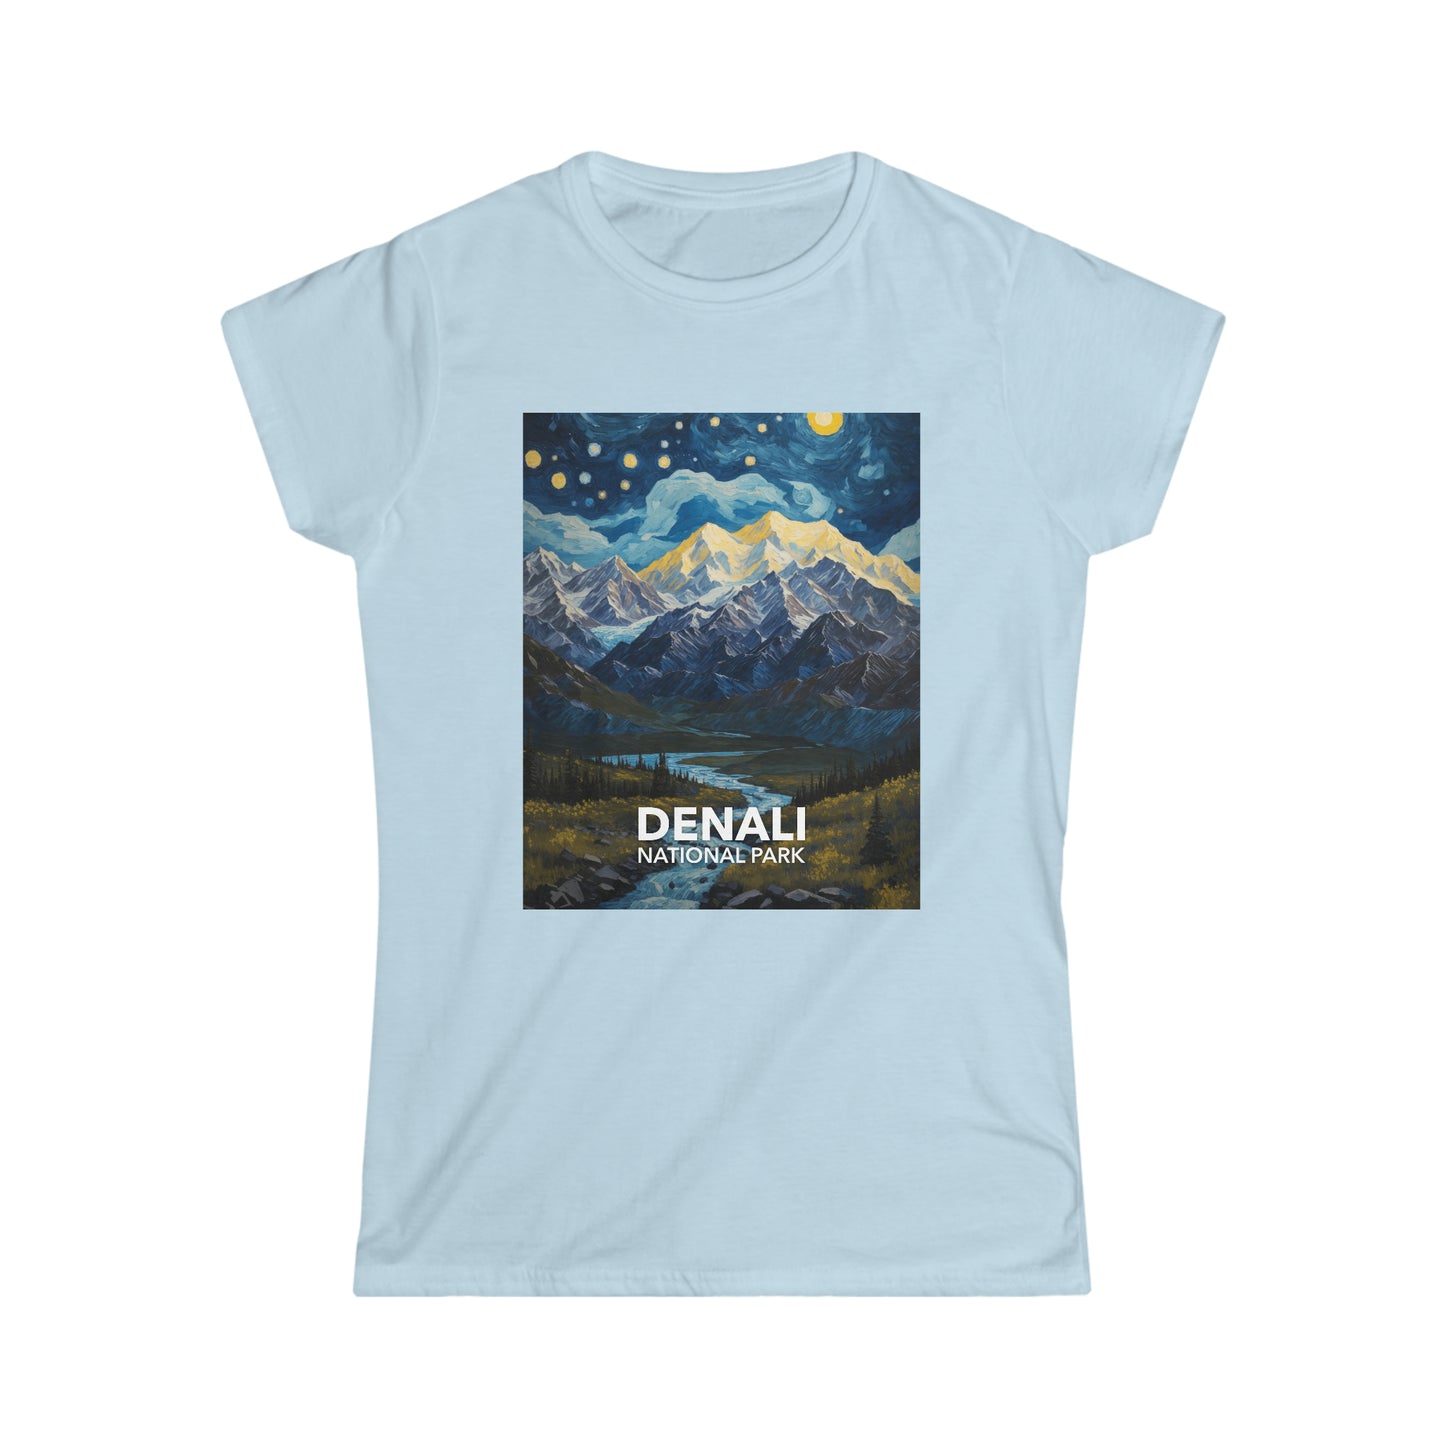 Denali National Park T-Shirt - Women's Starry Night